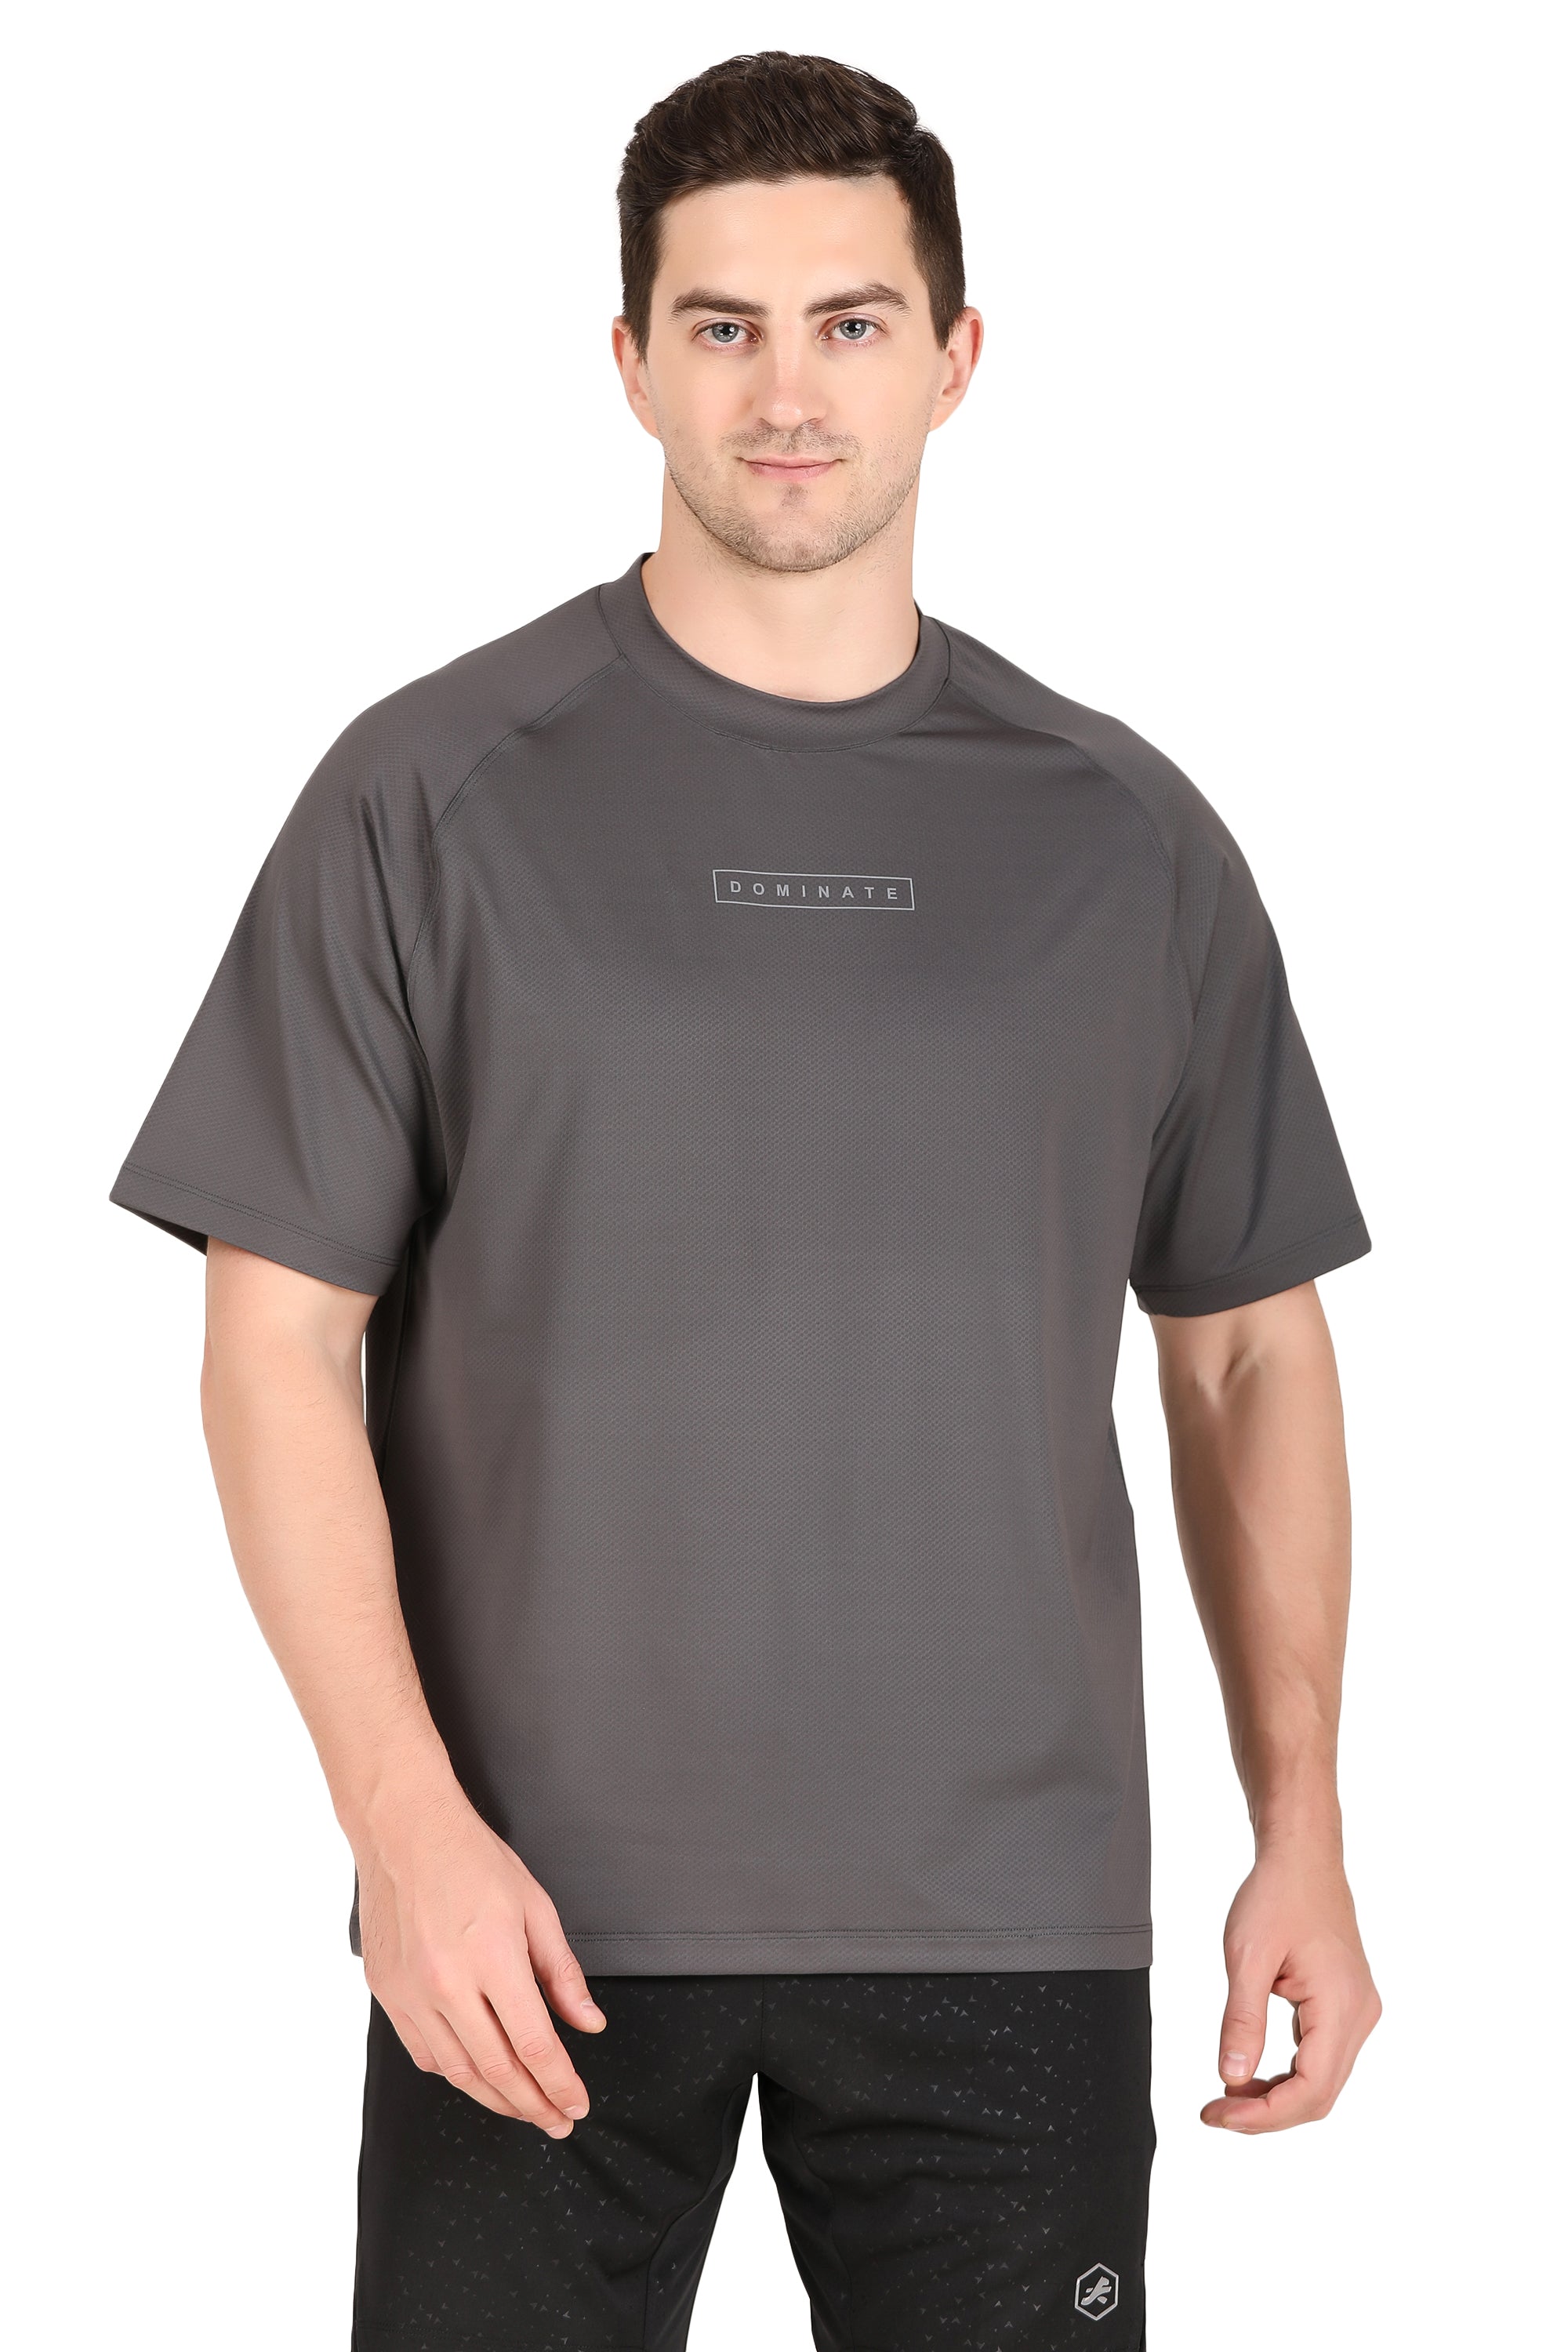 Men's Oversize Sportswear Tshirt (Tan)